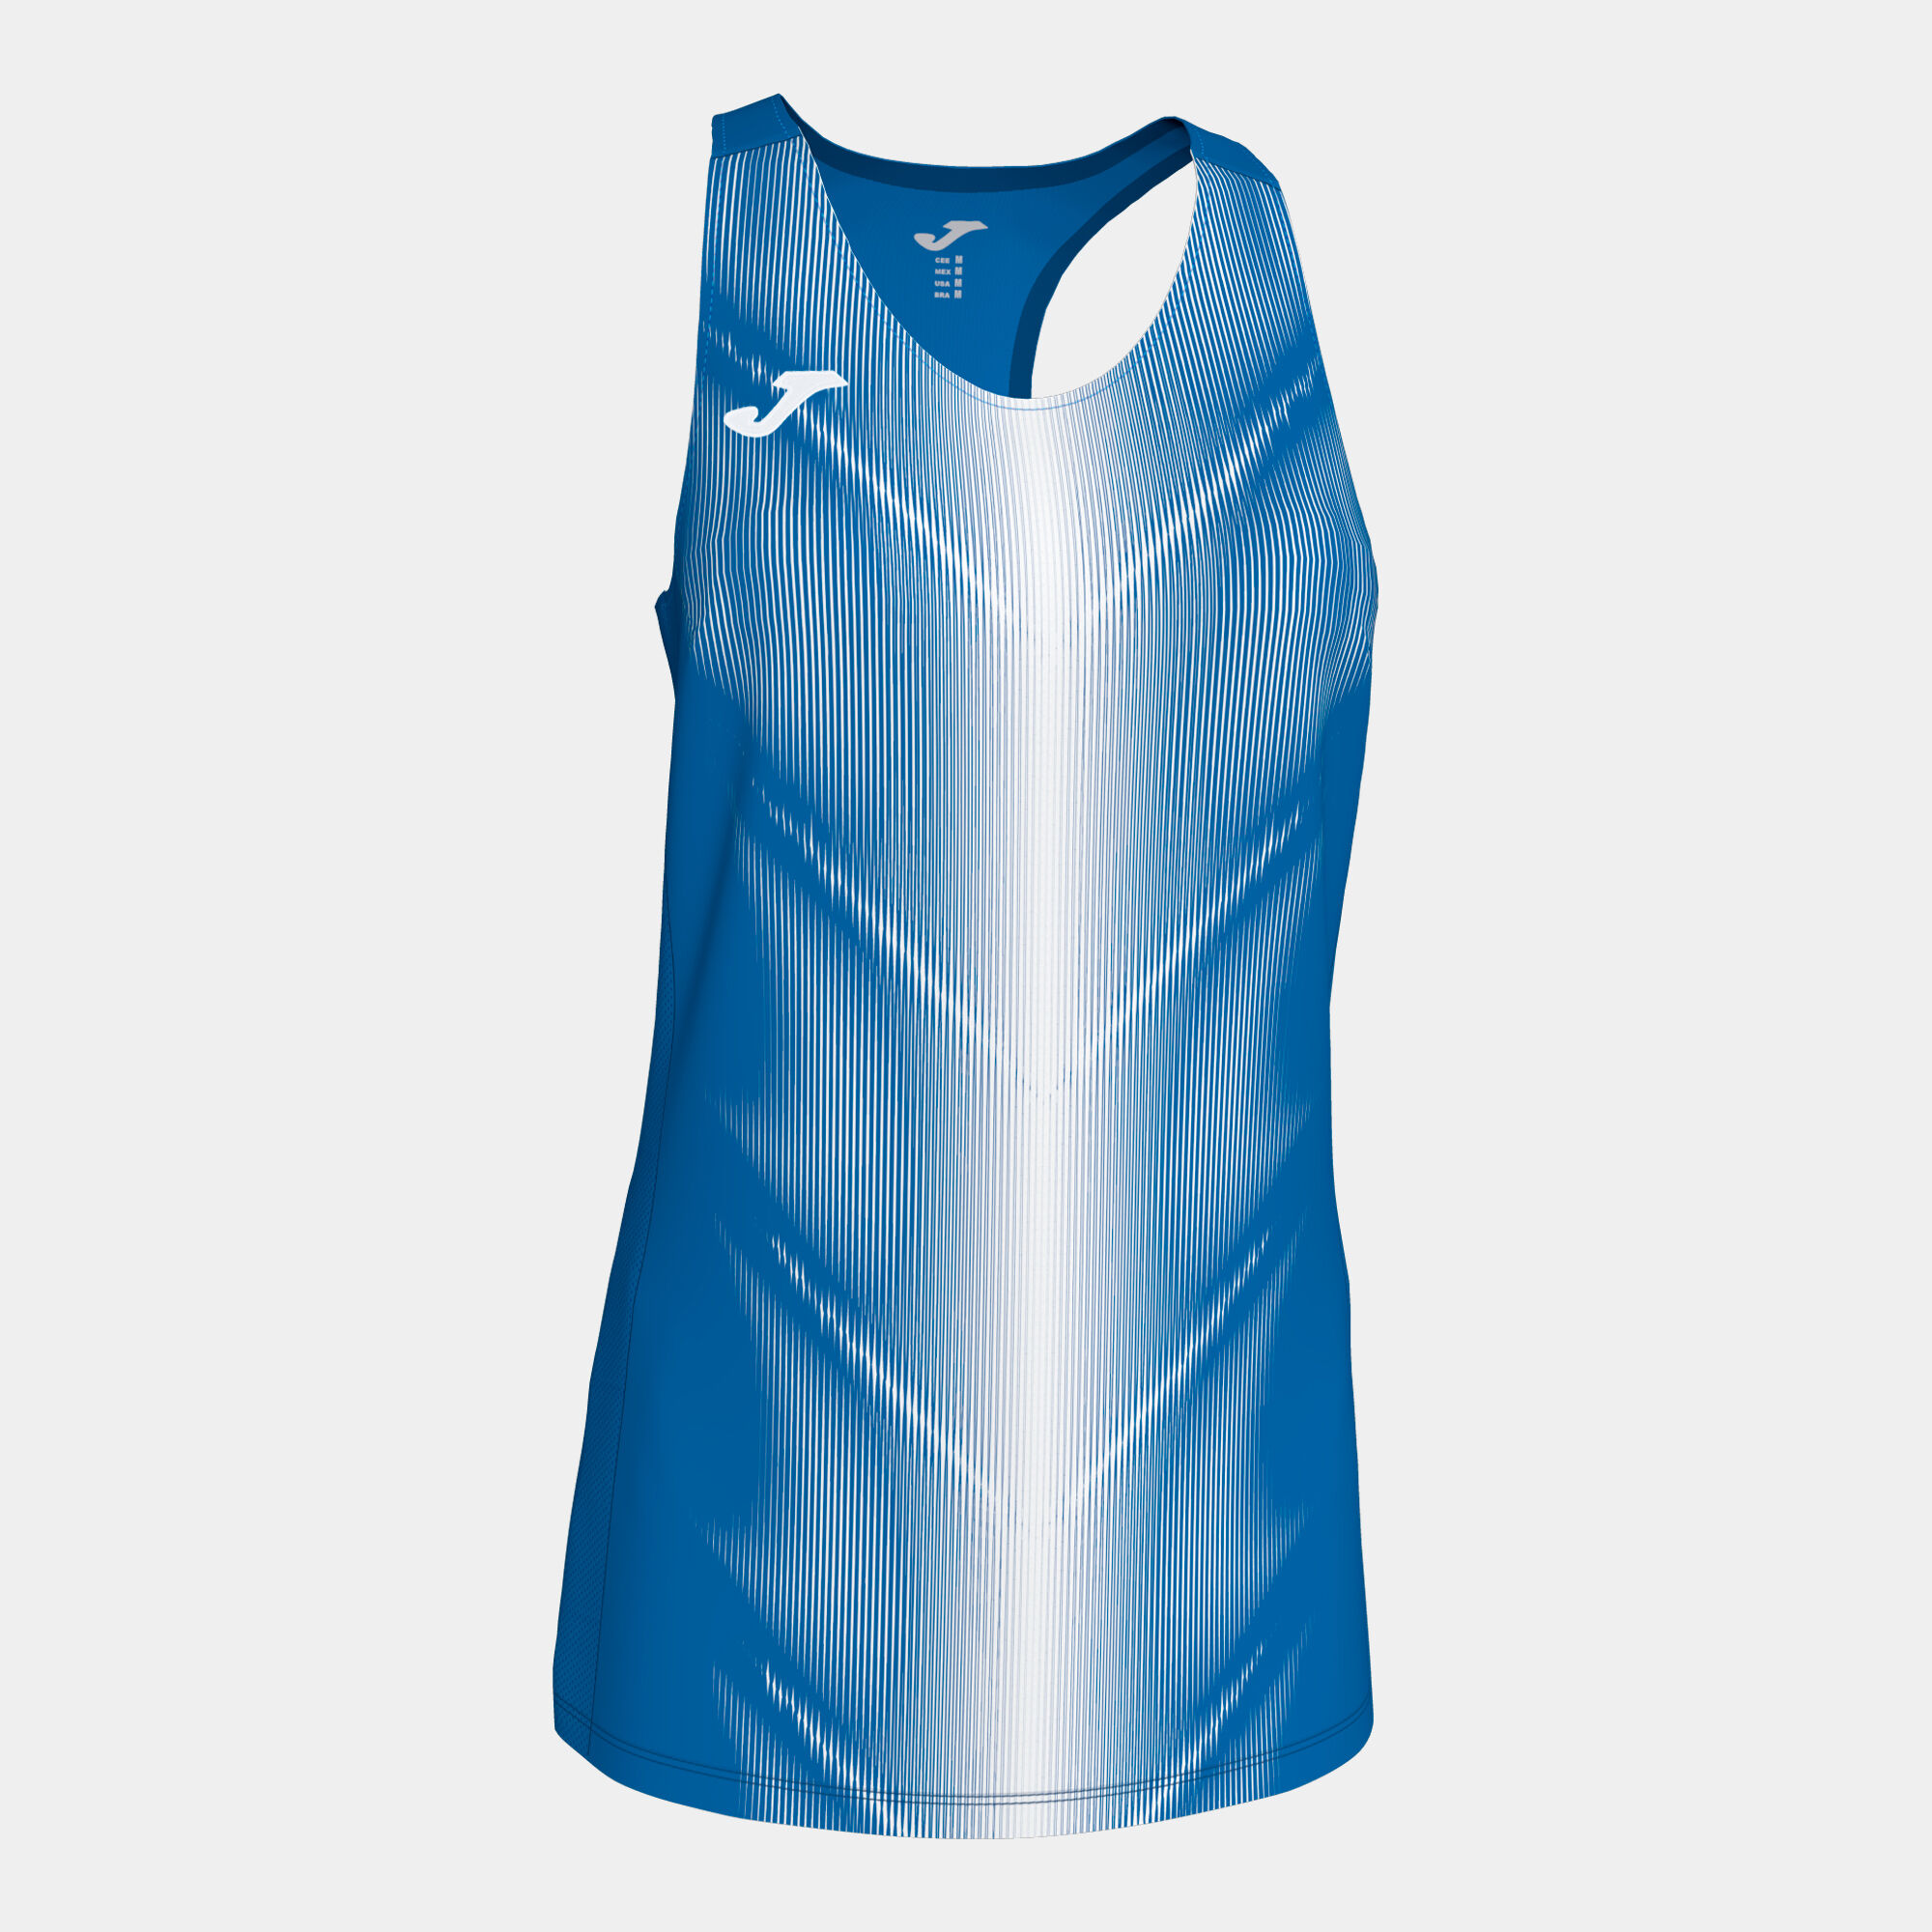 Schulterriemen-shirt frau Olimpia königsblau weiß